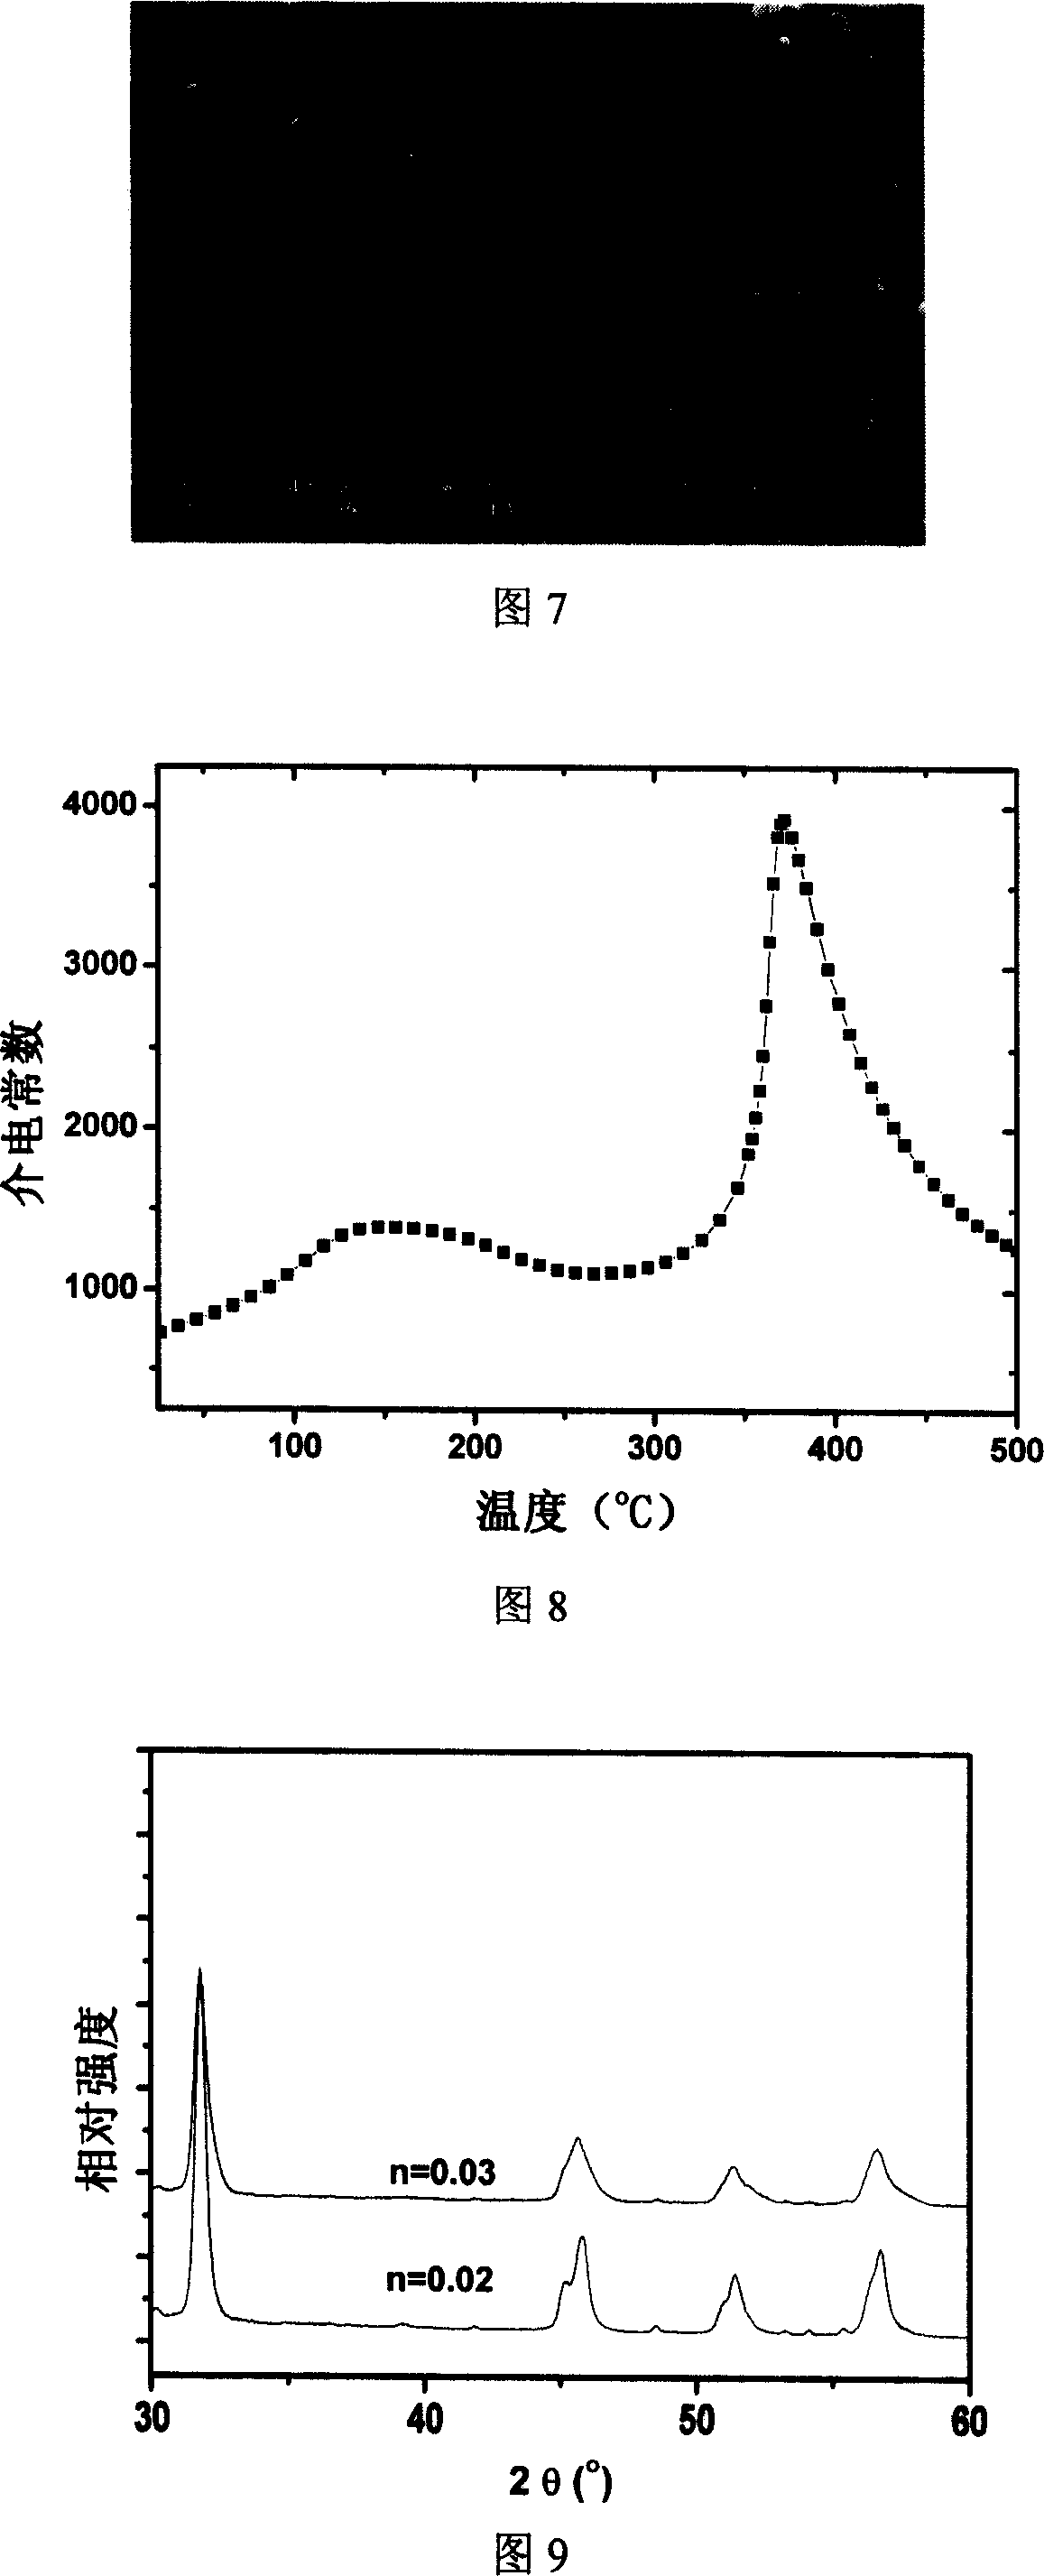 Sodium-potassium niobate series substituted by bismuth-base calcium-titanium ore and preparing method